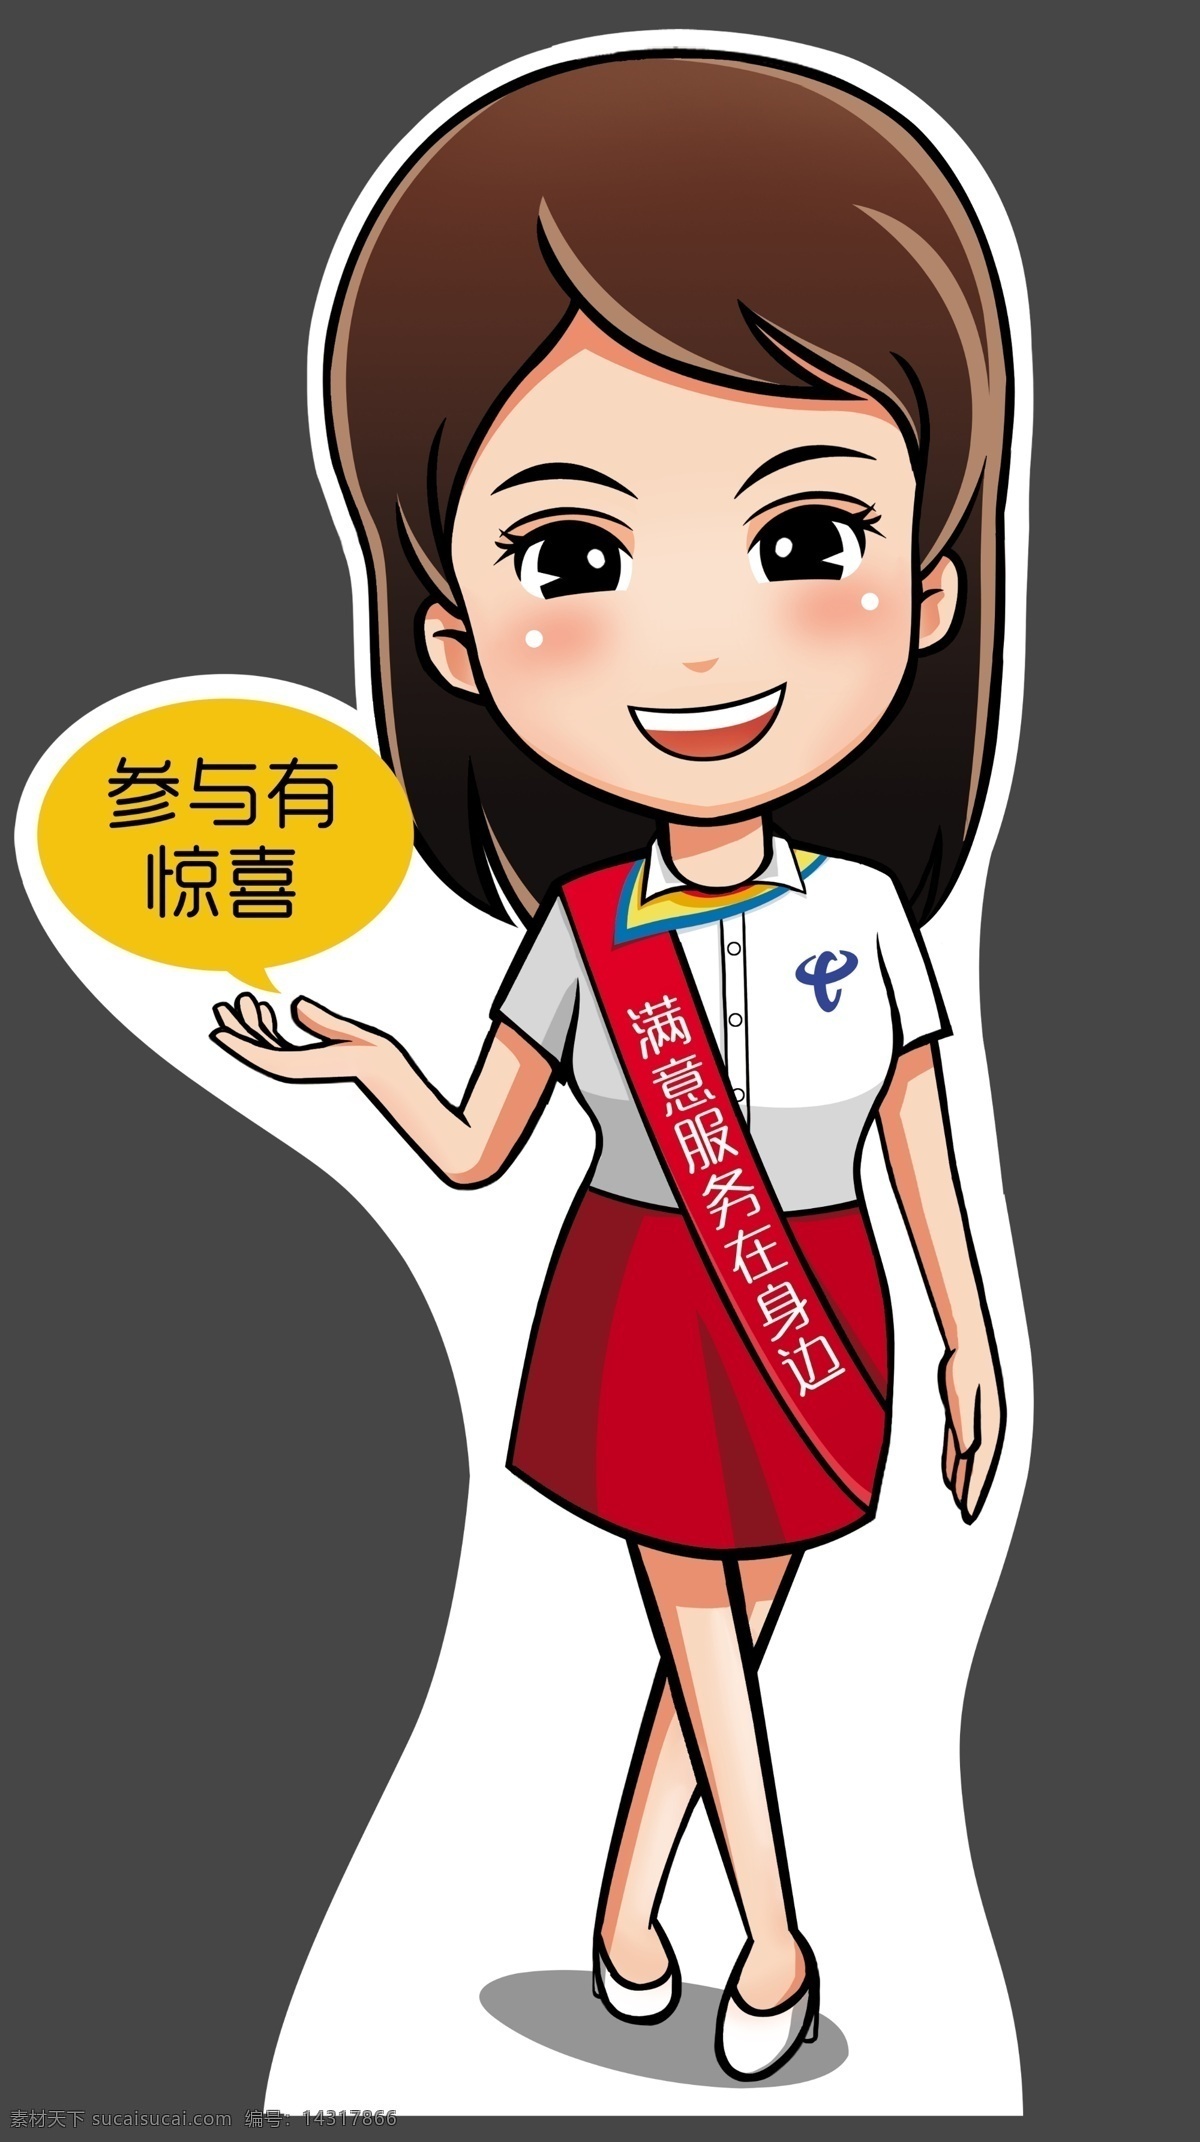 人形立牌 中国电信 服务员 营业员 参与有惊喜 美女 女孩 裙子 卡通 笑脸 可爱 服务 高跟鞋 长发 制服 工作服 cis设计